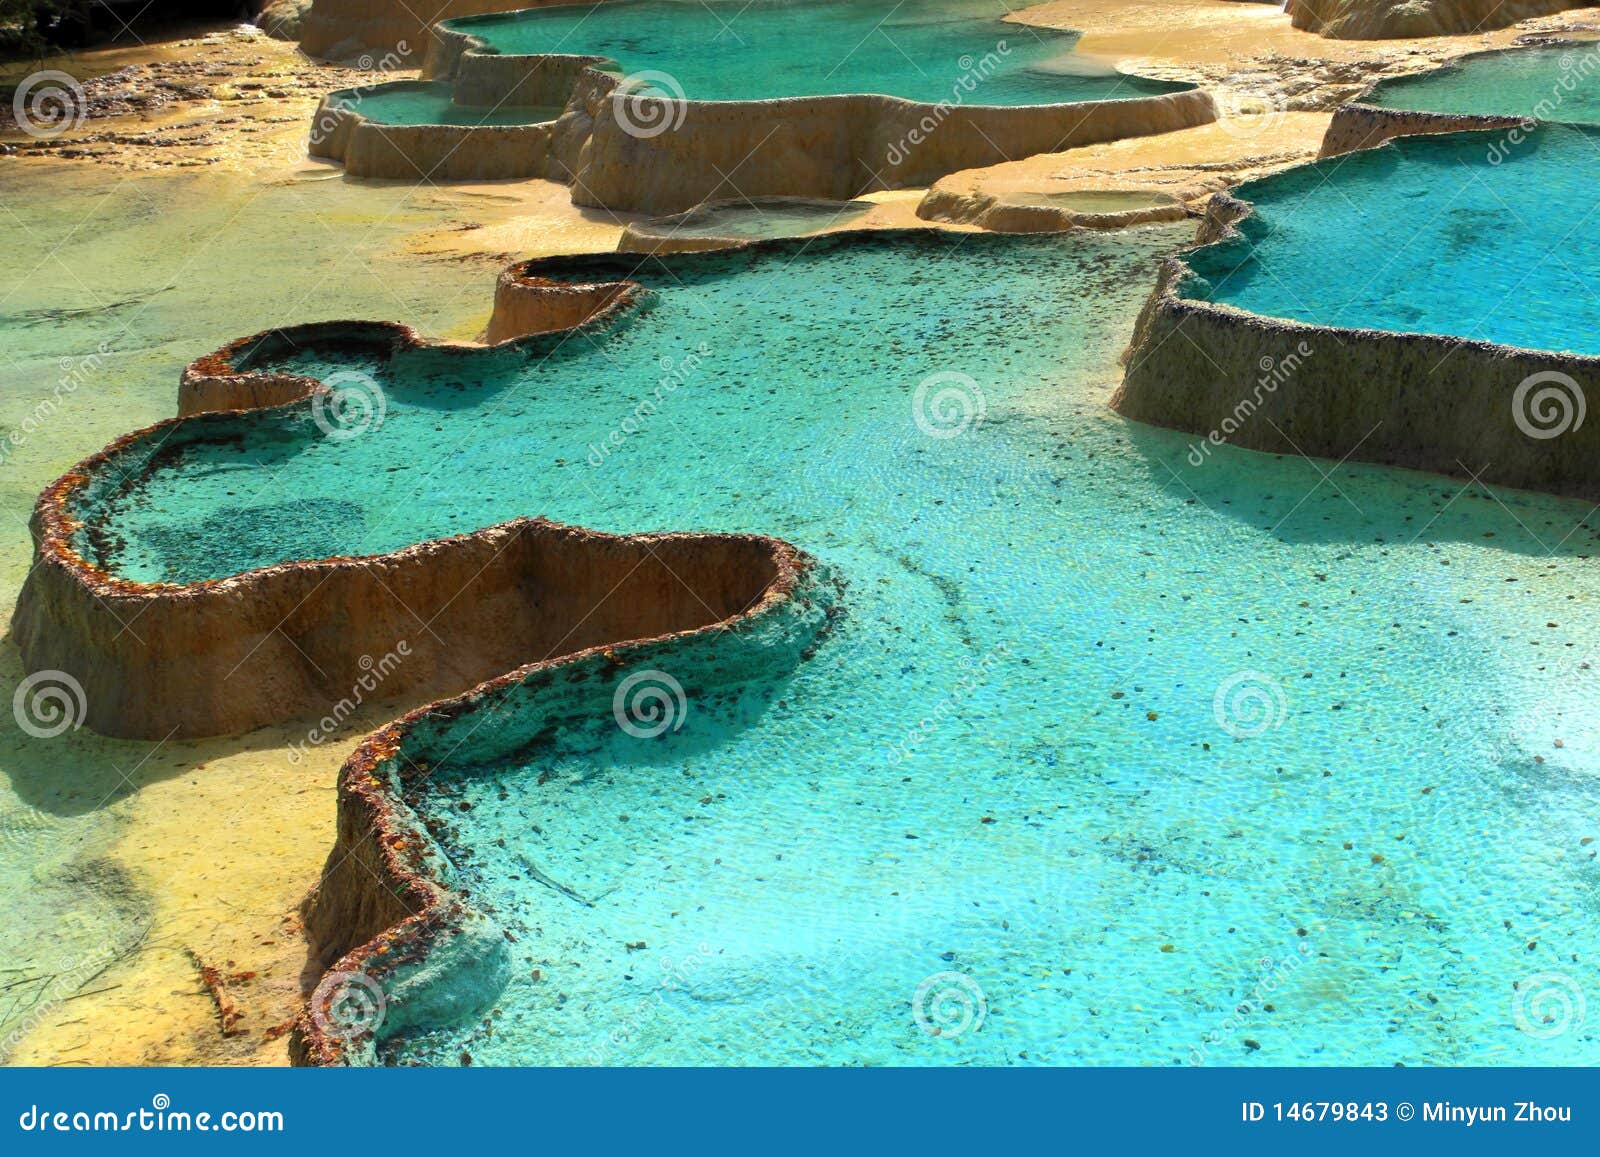 limestone pools